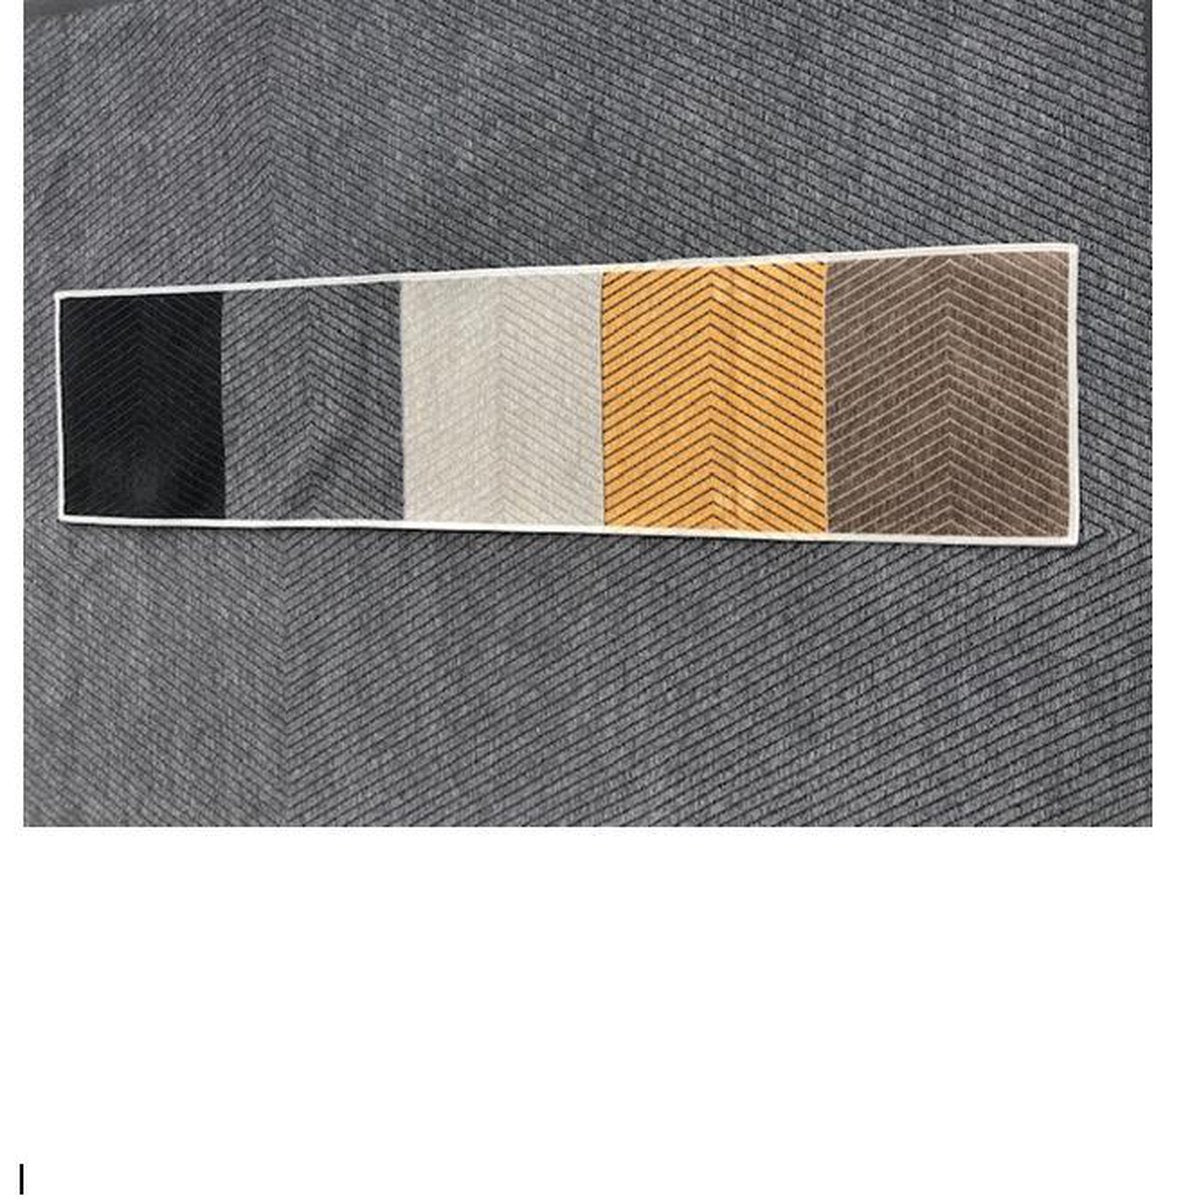 Exclusief Vloerkleed Viva recto verso - tweezijdig vloerkleed - gratis antislip bijgeleverd - grijs grey - 160/230 cm - tapijt - gestreept en visgraat